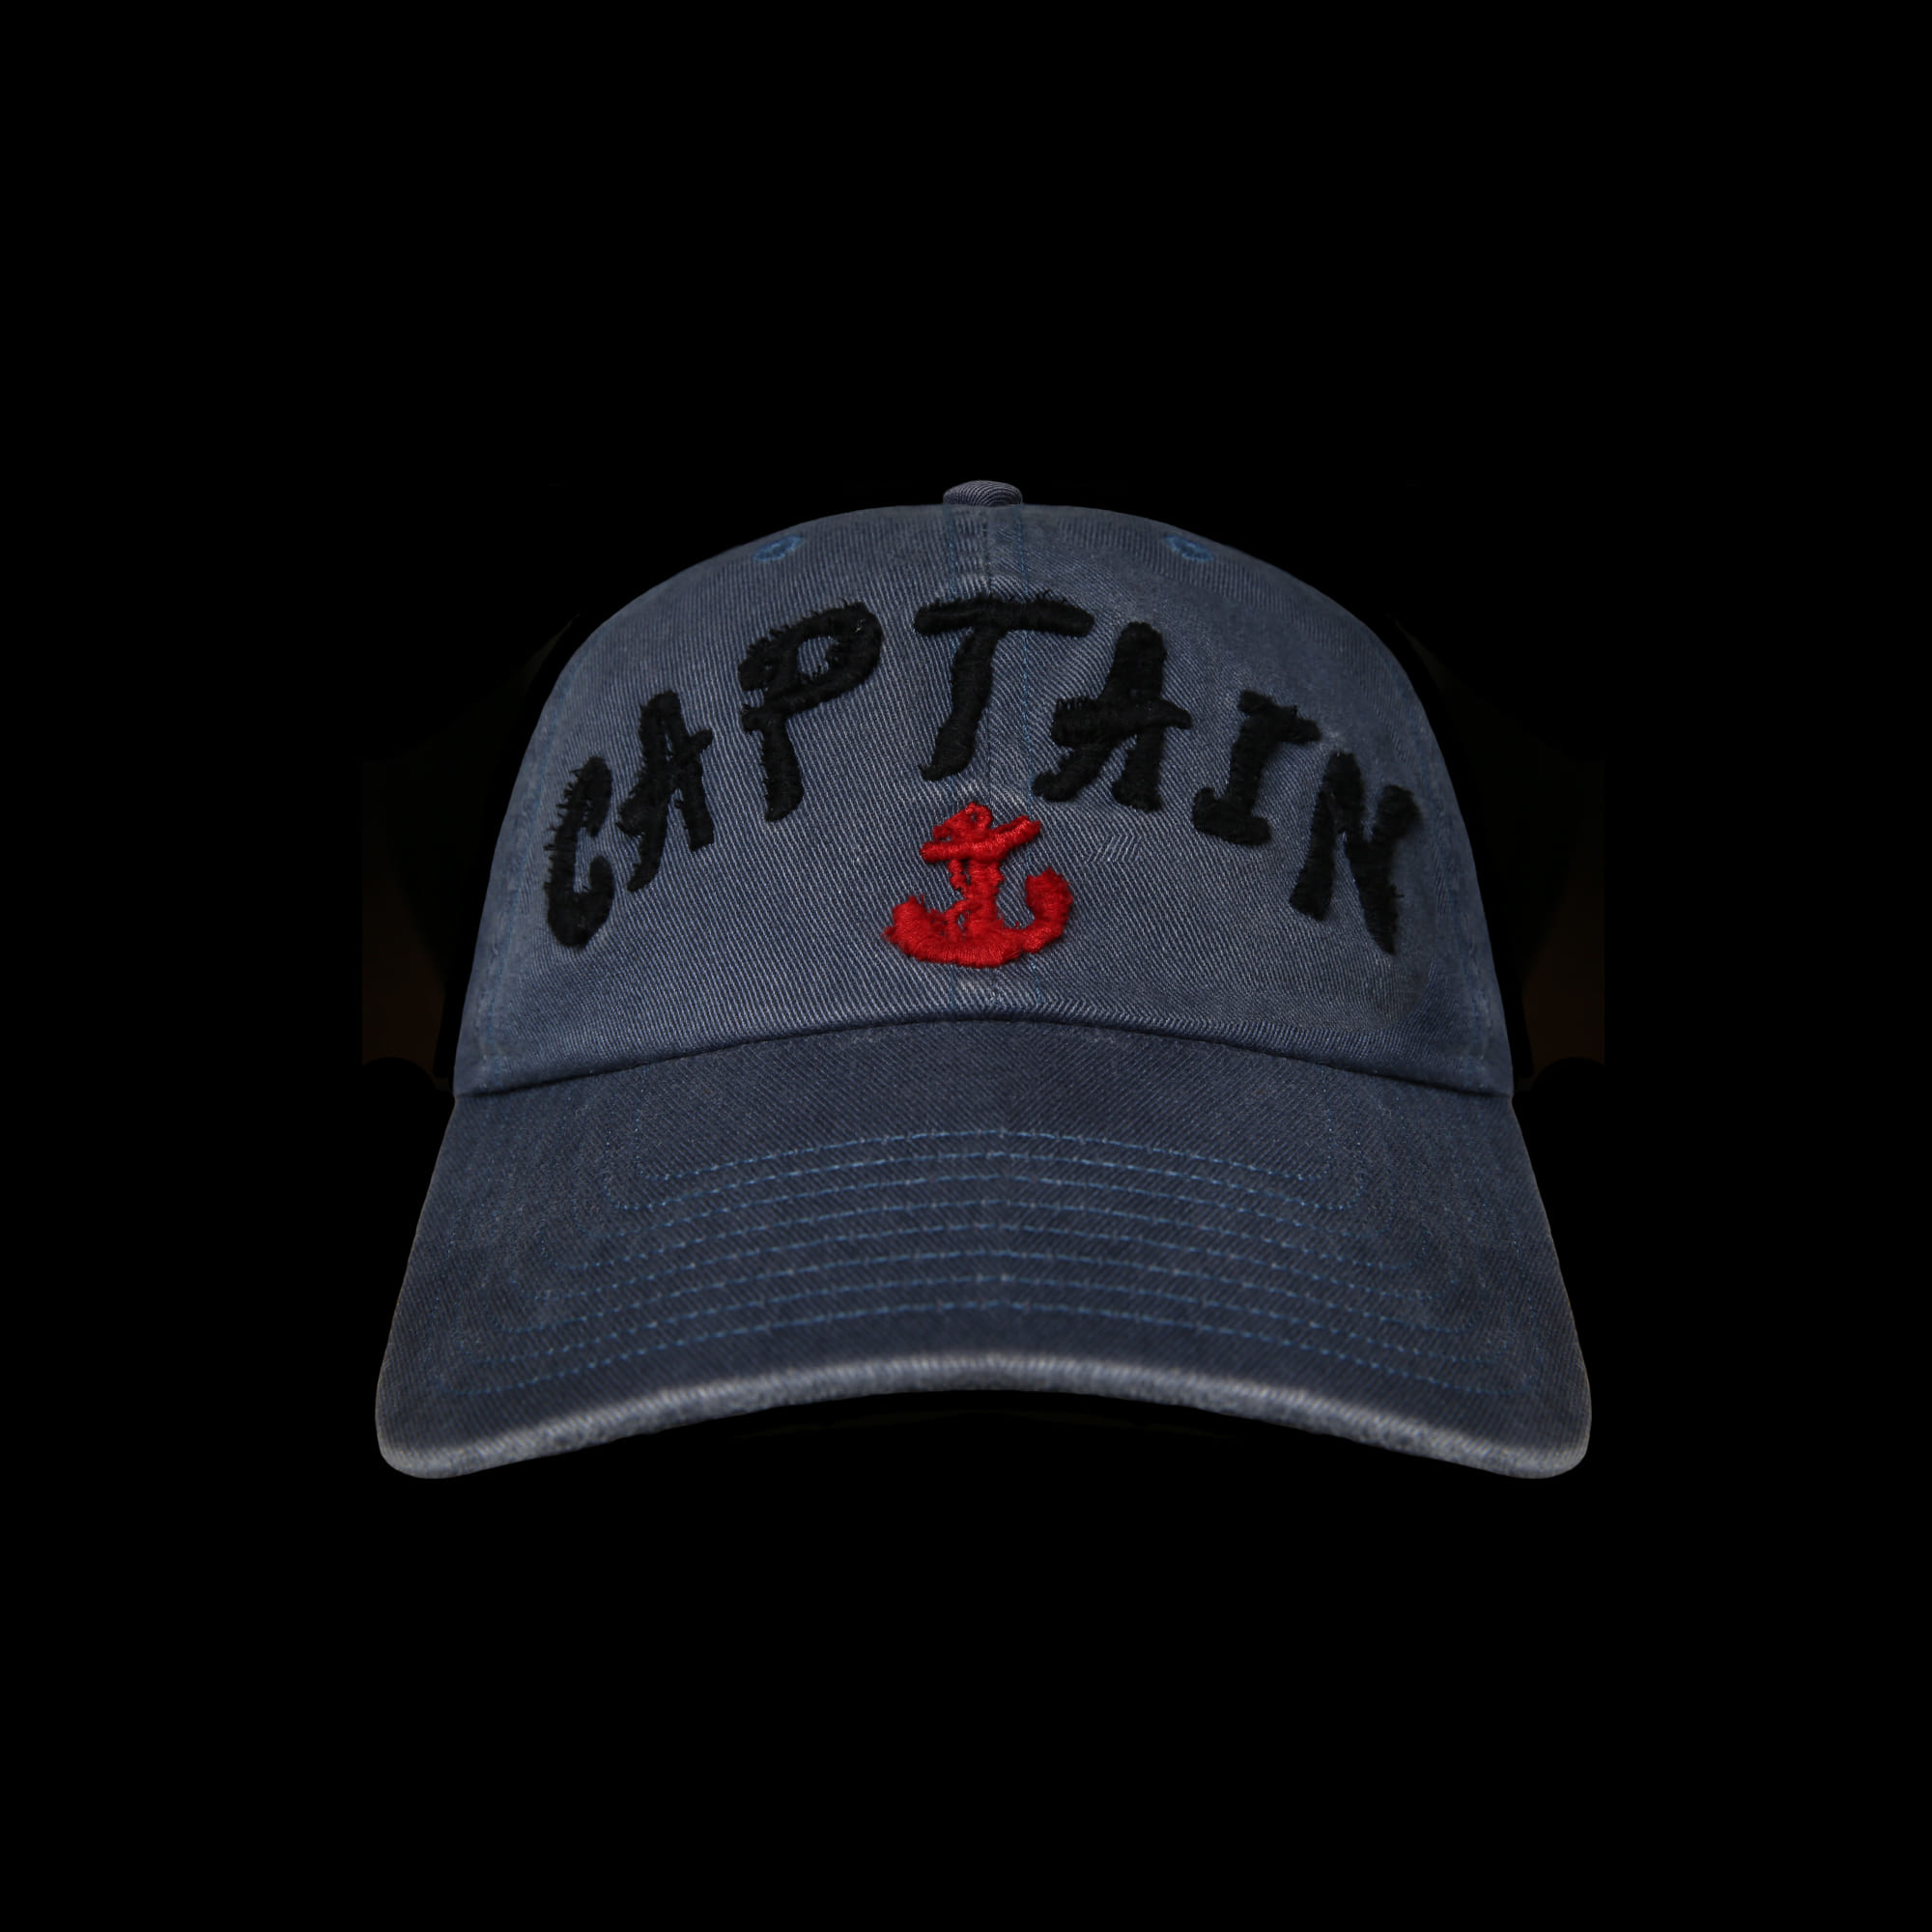 RRLWORK CAP